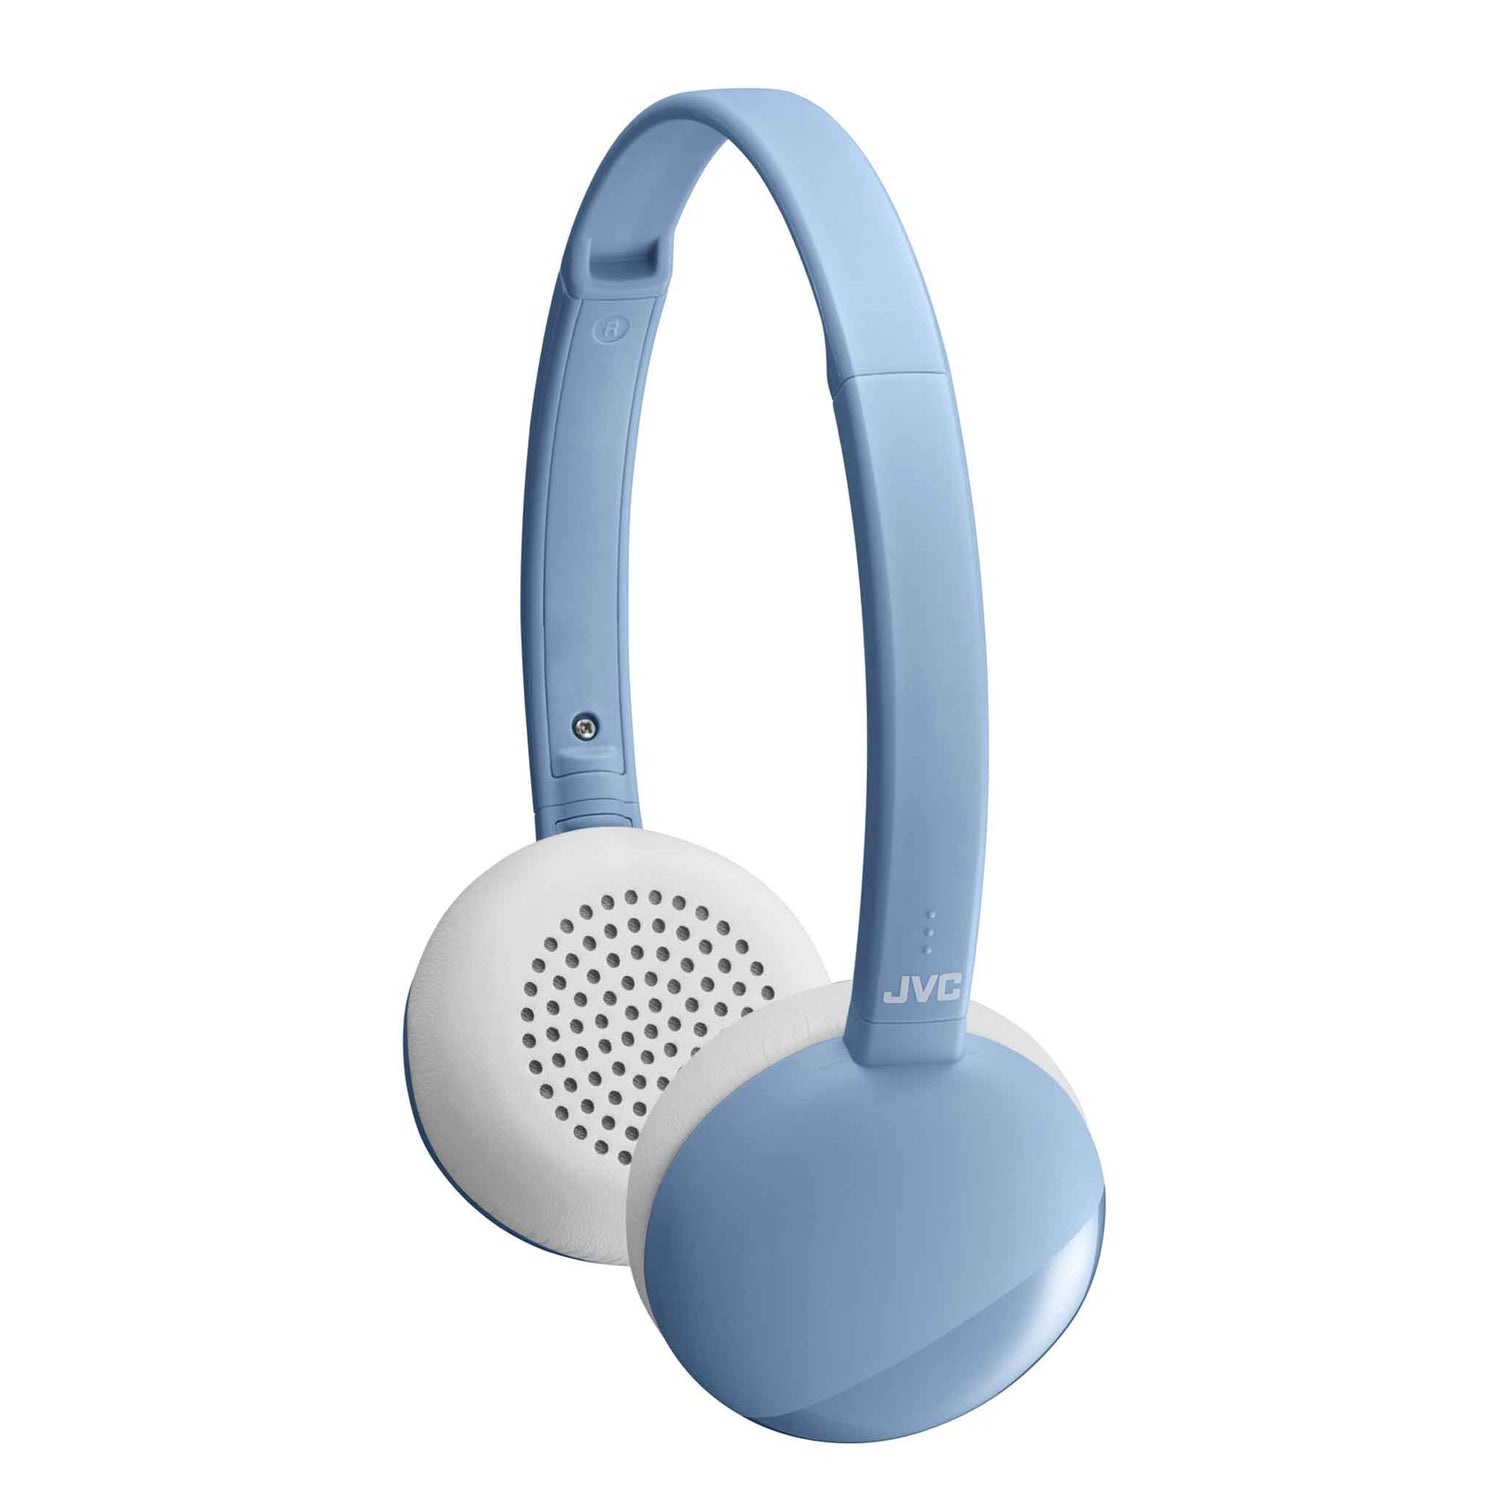 HA-S22W in Blue Bluetooth Wireless Headphones